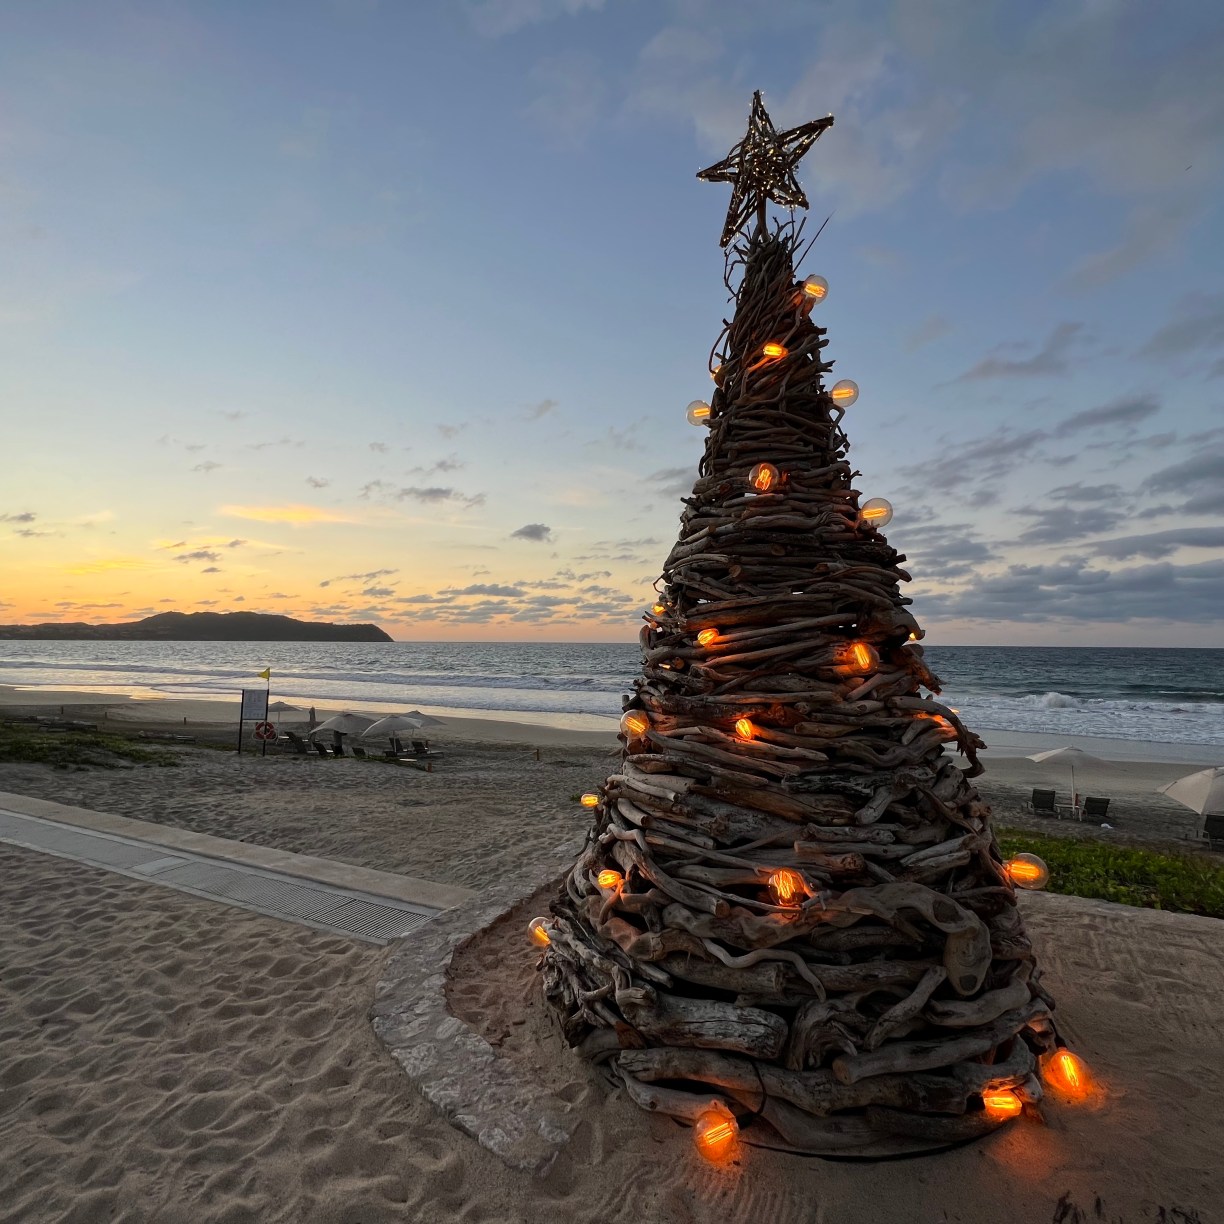 Christmas tree made out of driftwood, Conrad Punta de Mita beach